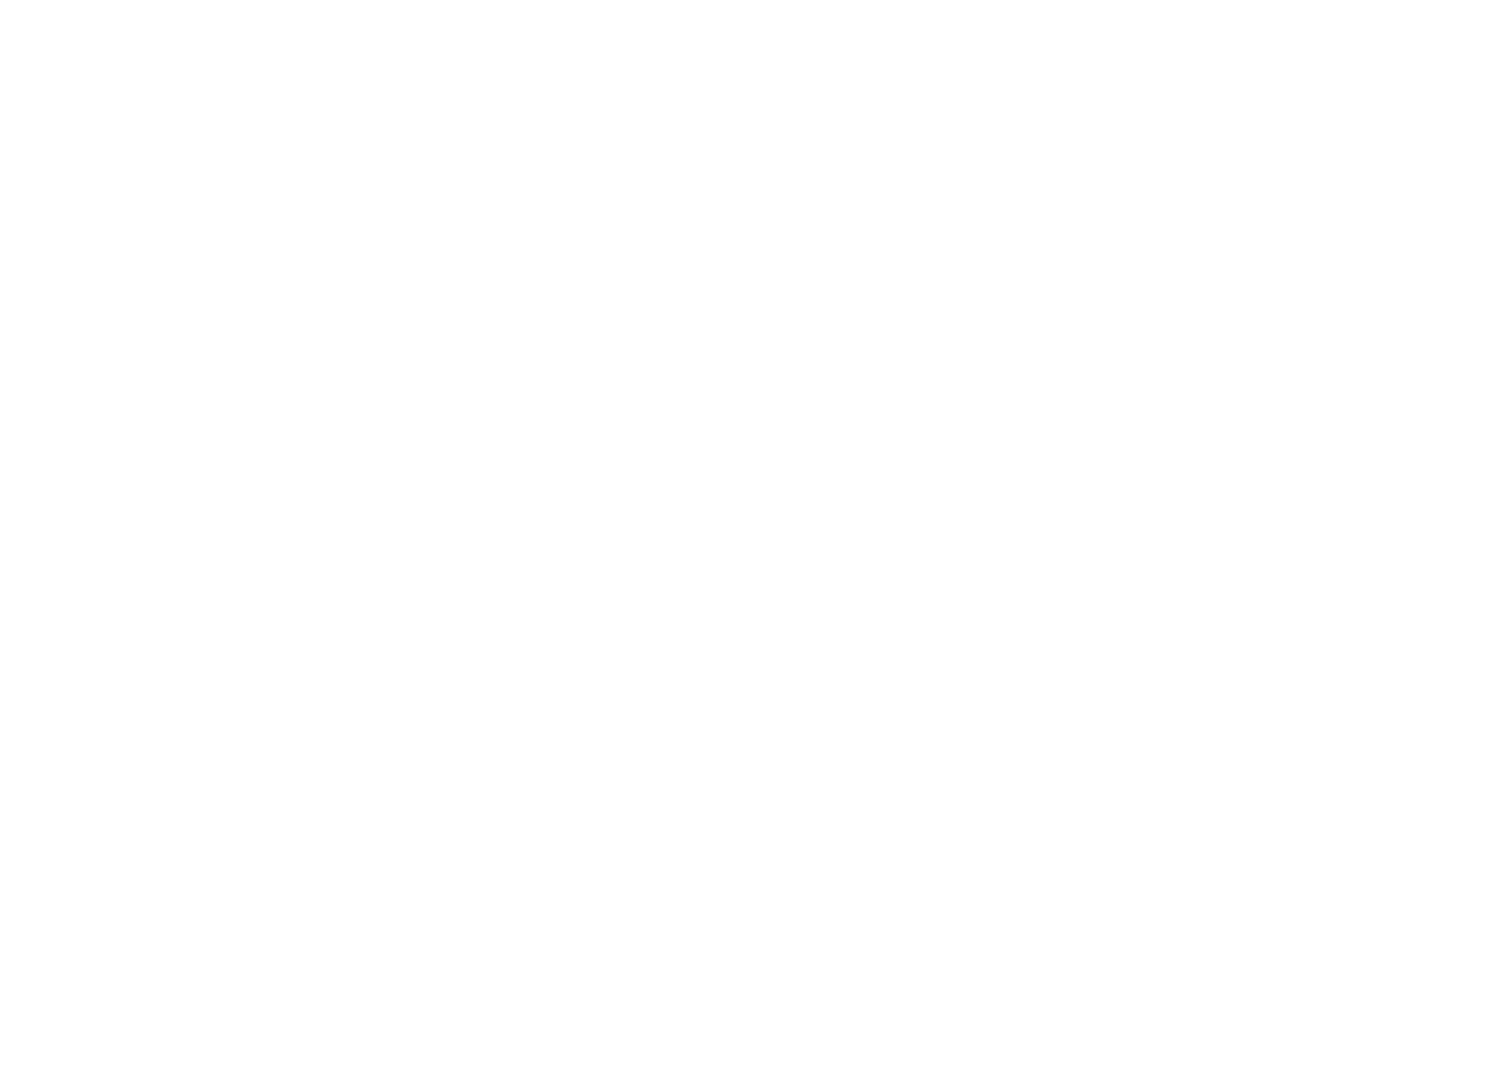 Magpie